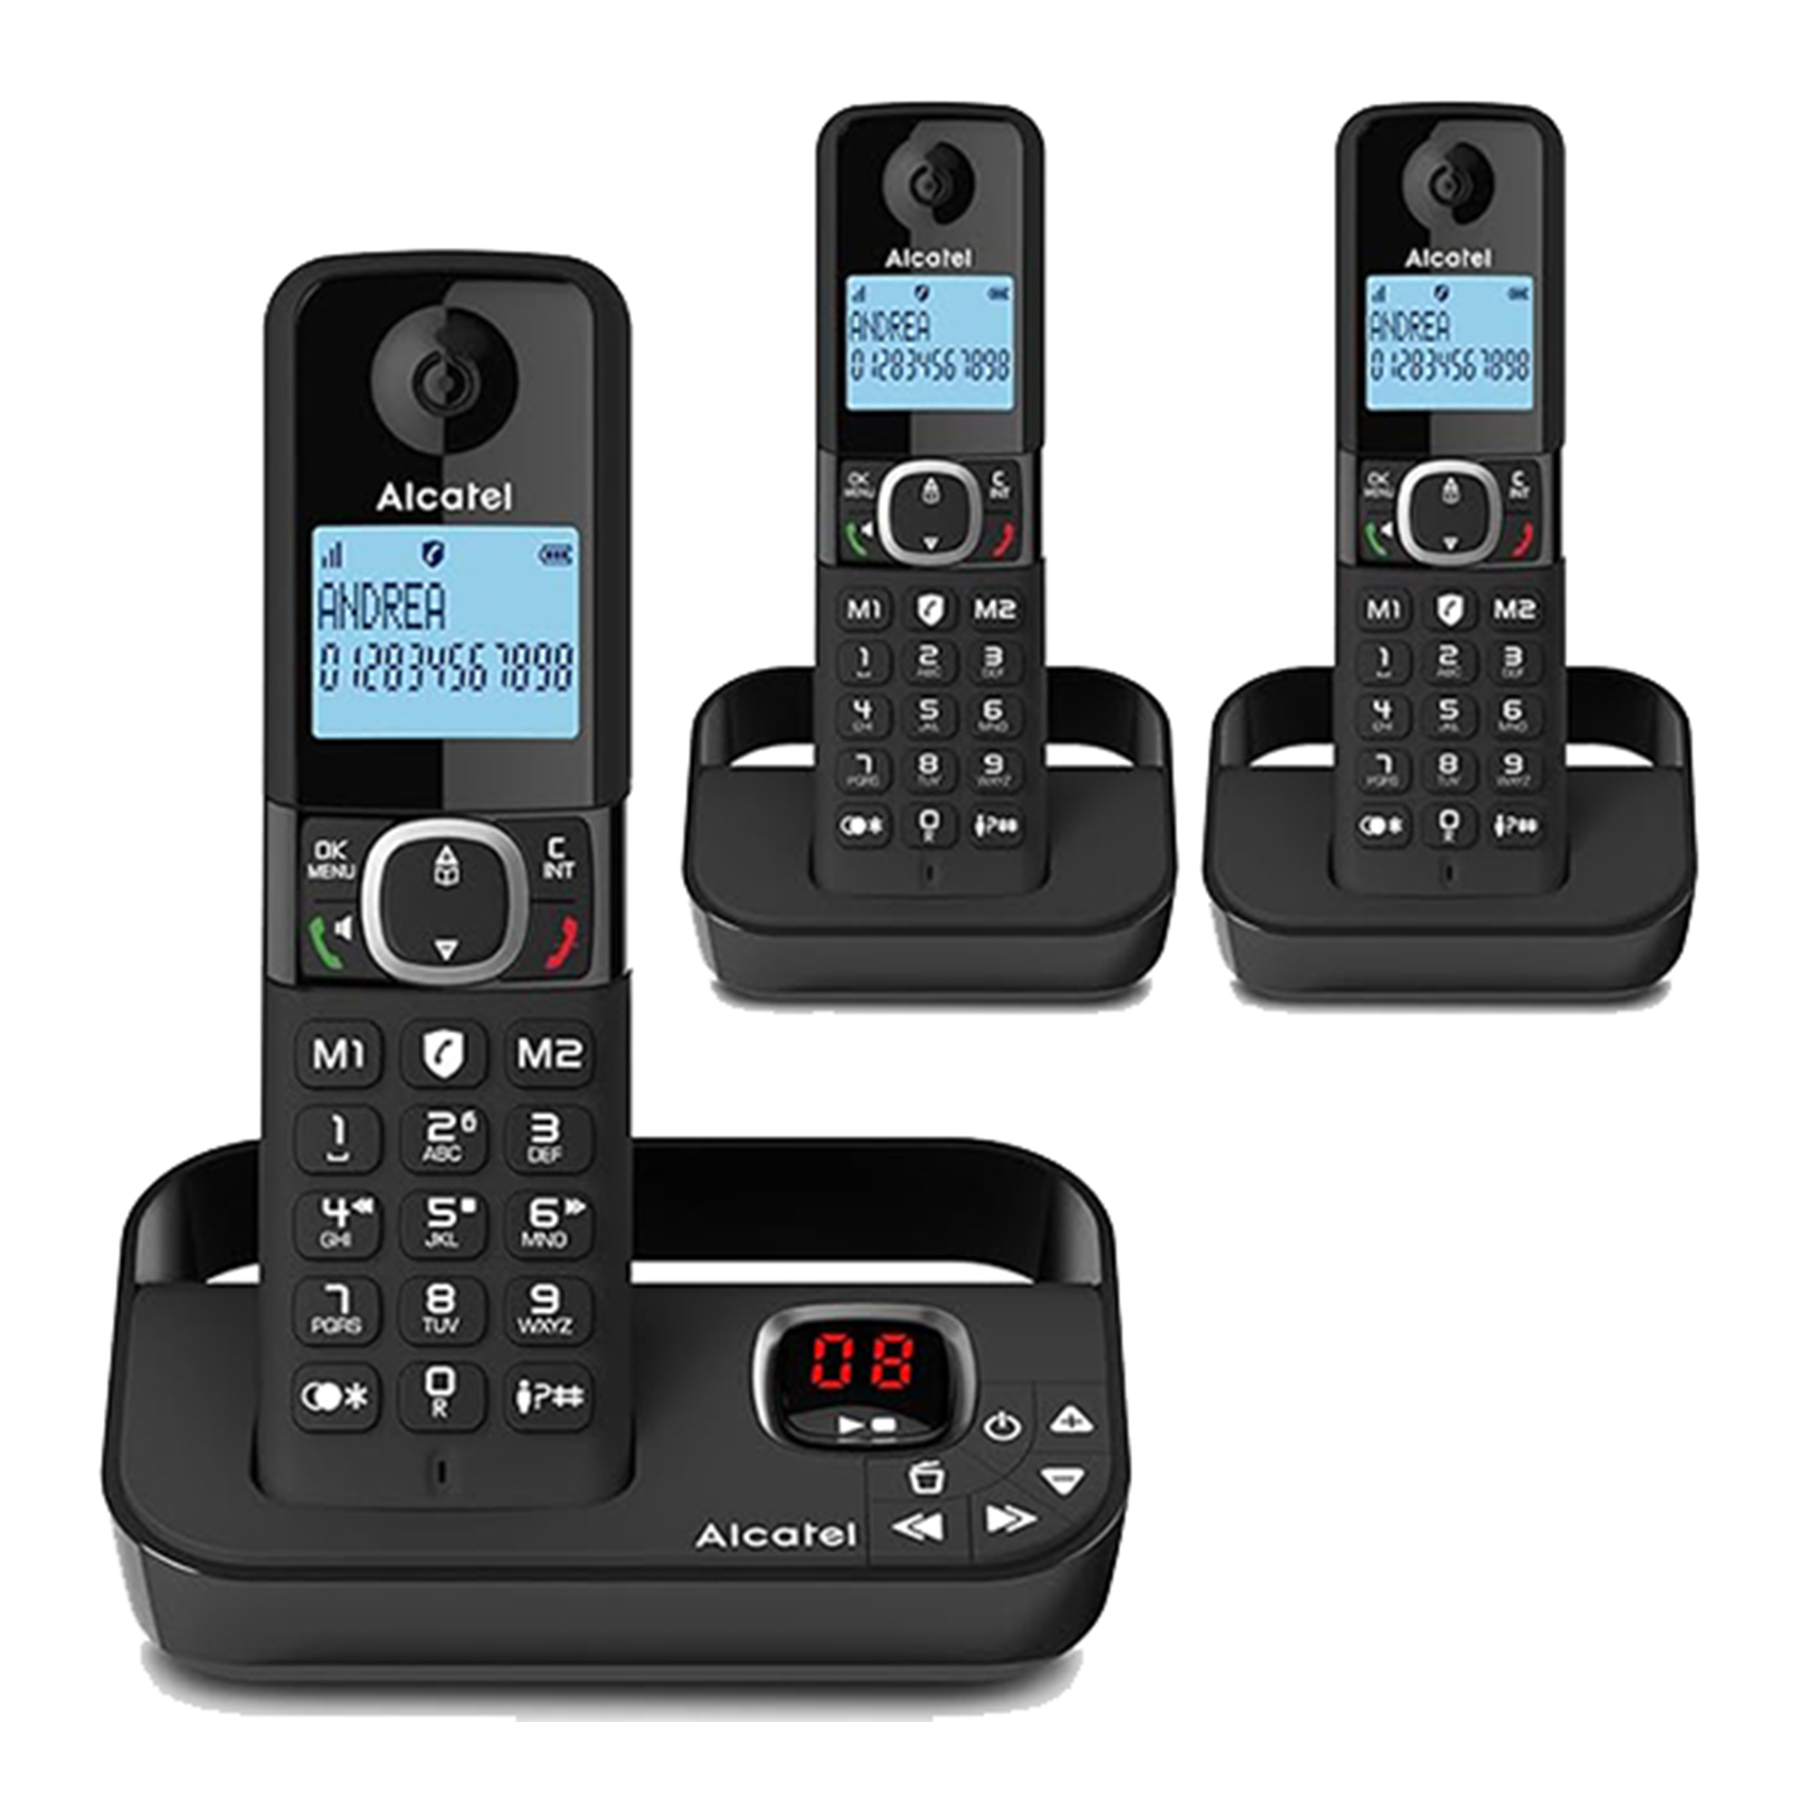 نکته خرید - قیمت روز تلفن بی سیم آلکاتل مدل F860 Voice Trio کد 1601 بسته سه عددی خرید